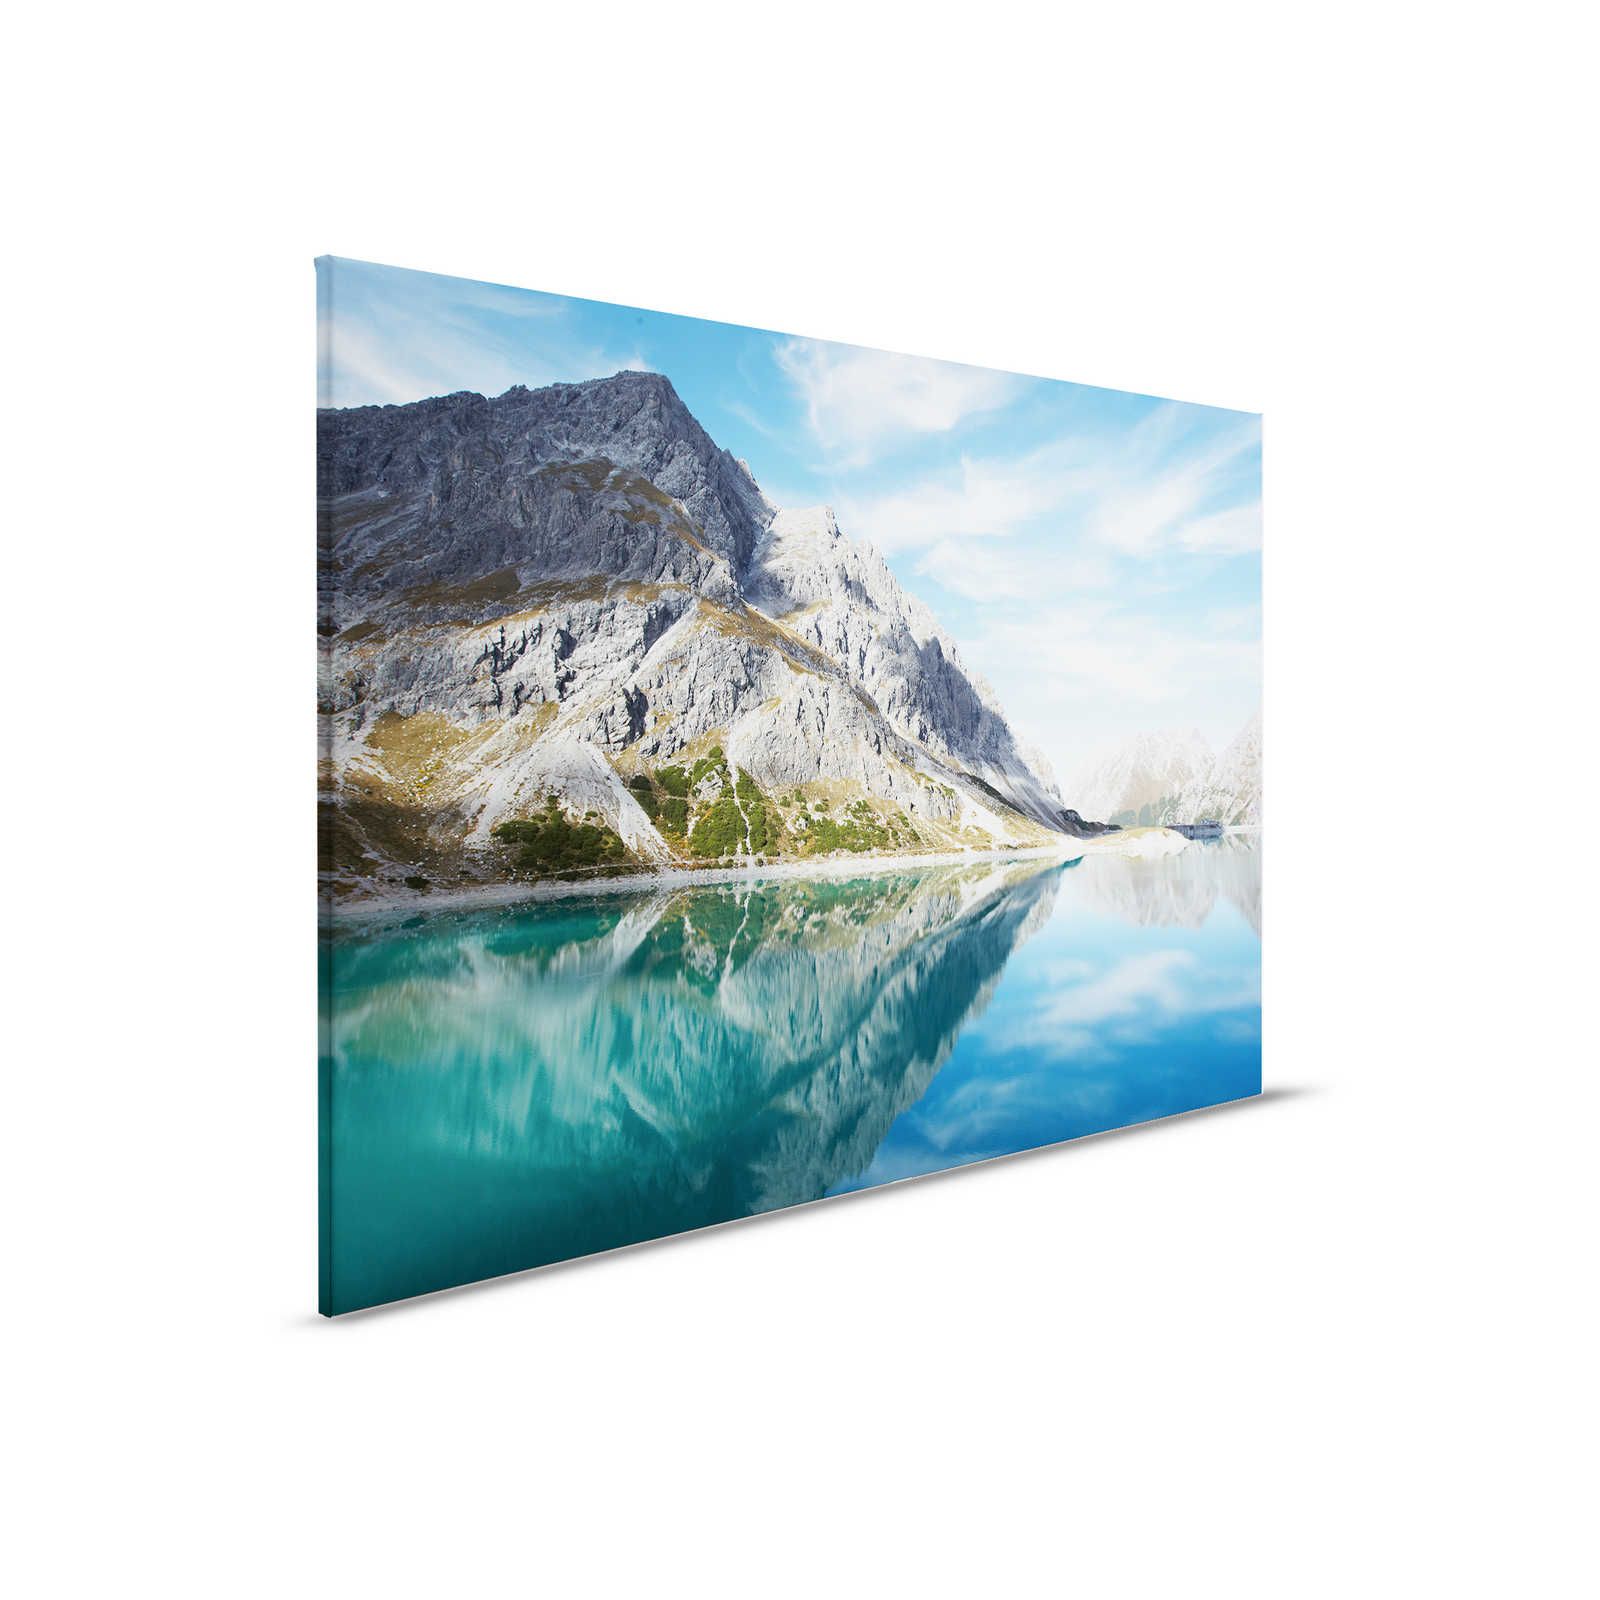 Helder bergmeer - Canvas schilderij met natuurlijk bergpanorama - 0,90 m x 0,60 m
